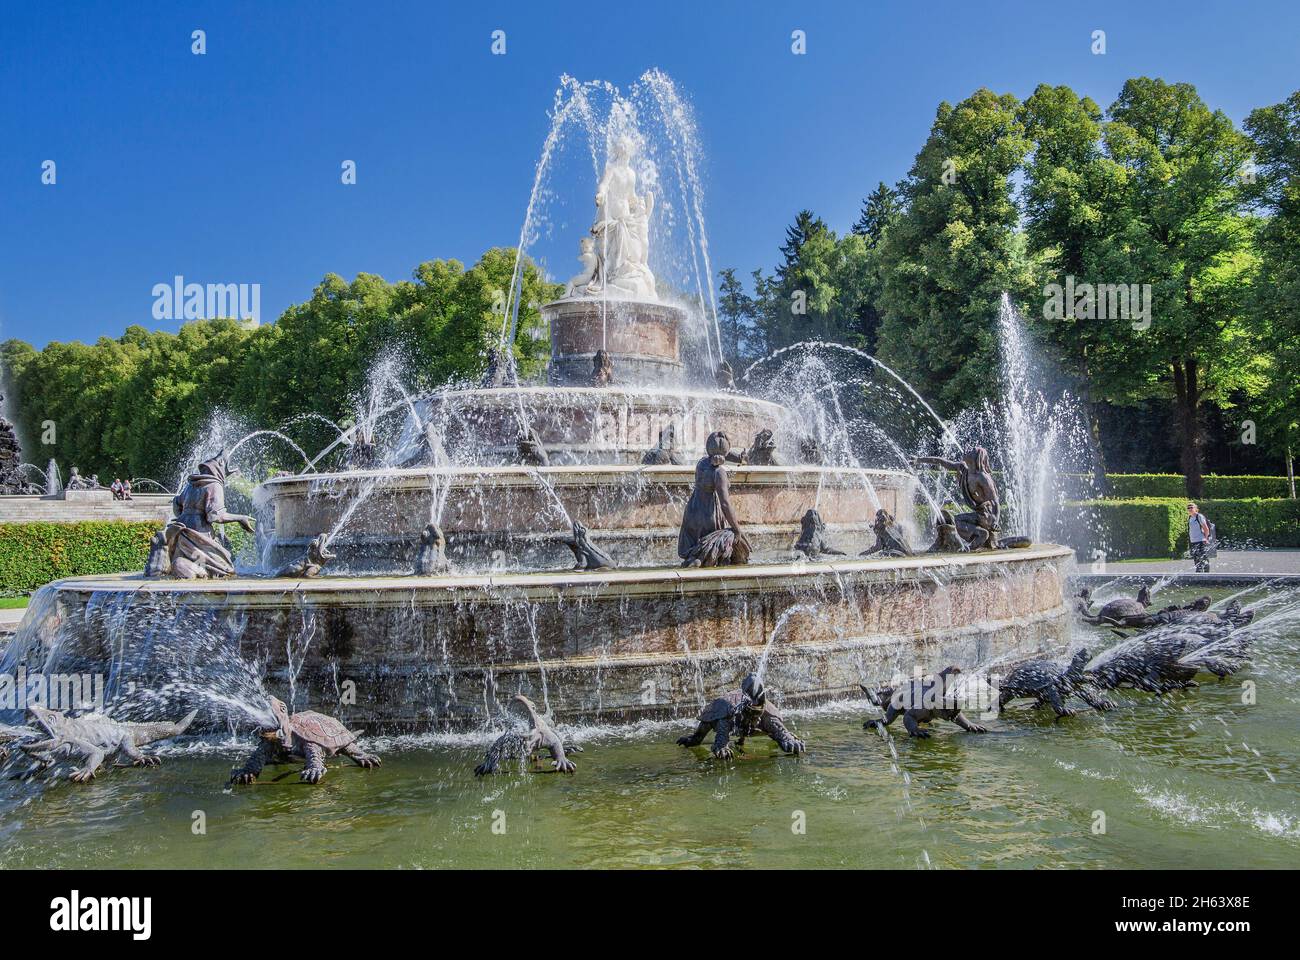 latonabrunnen auf dem Gartenparterre des herrenchiemsee-Schlosses, Gemeinde chiemsee, herreninsel, chiemgau, oberbayern, bayern, deutschland Stockfoto